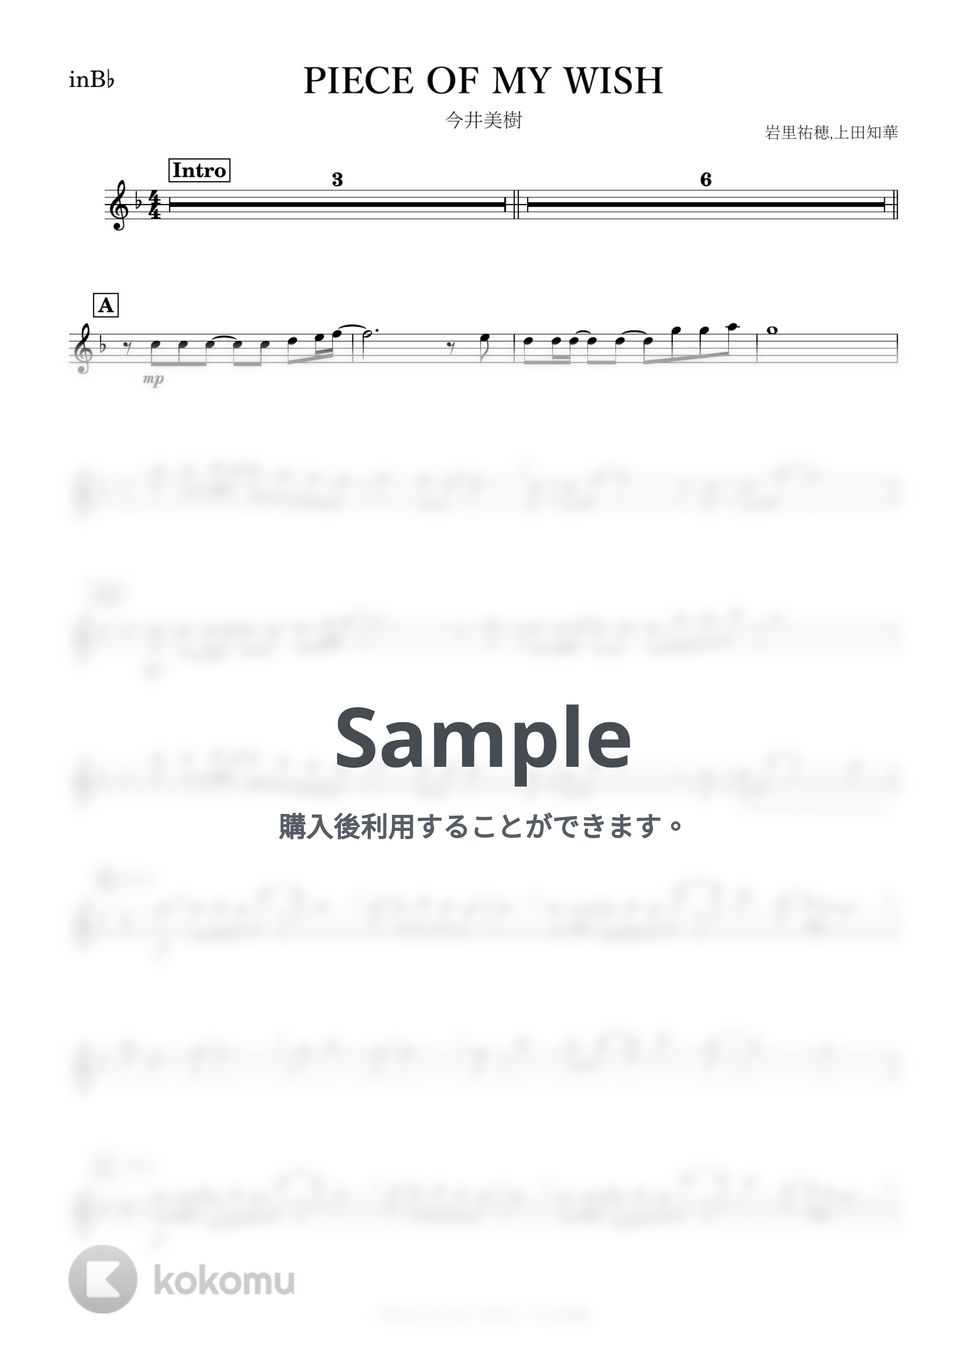 今井美樹 - PIECE OF MY WISH (B♭) by kanamusic